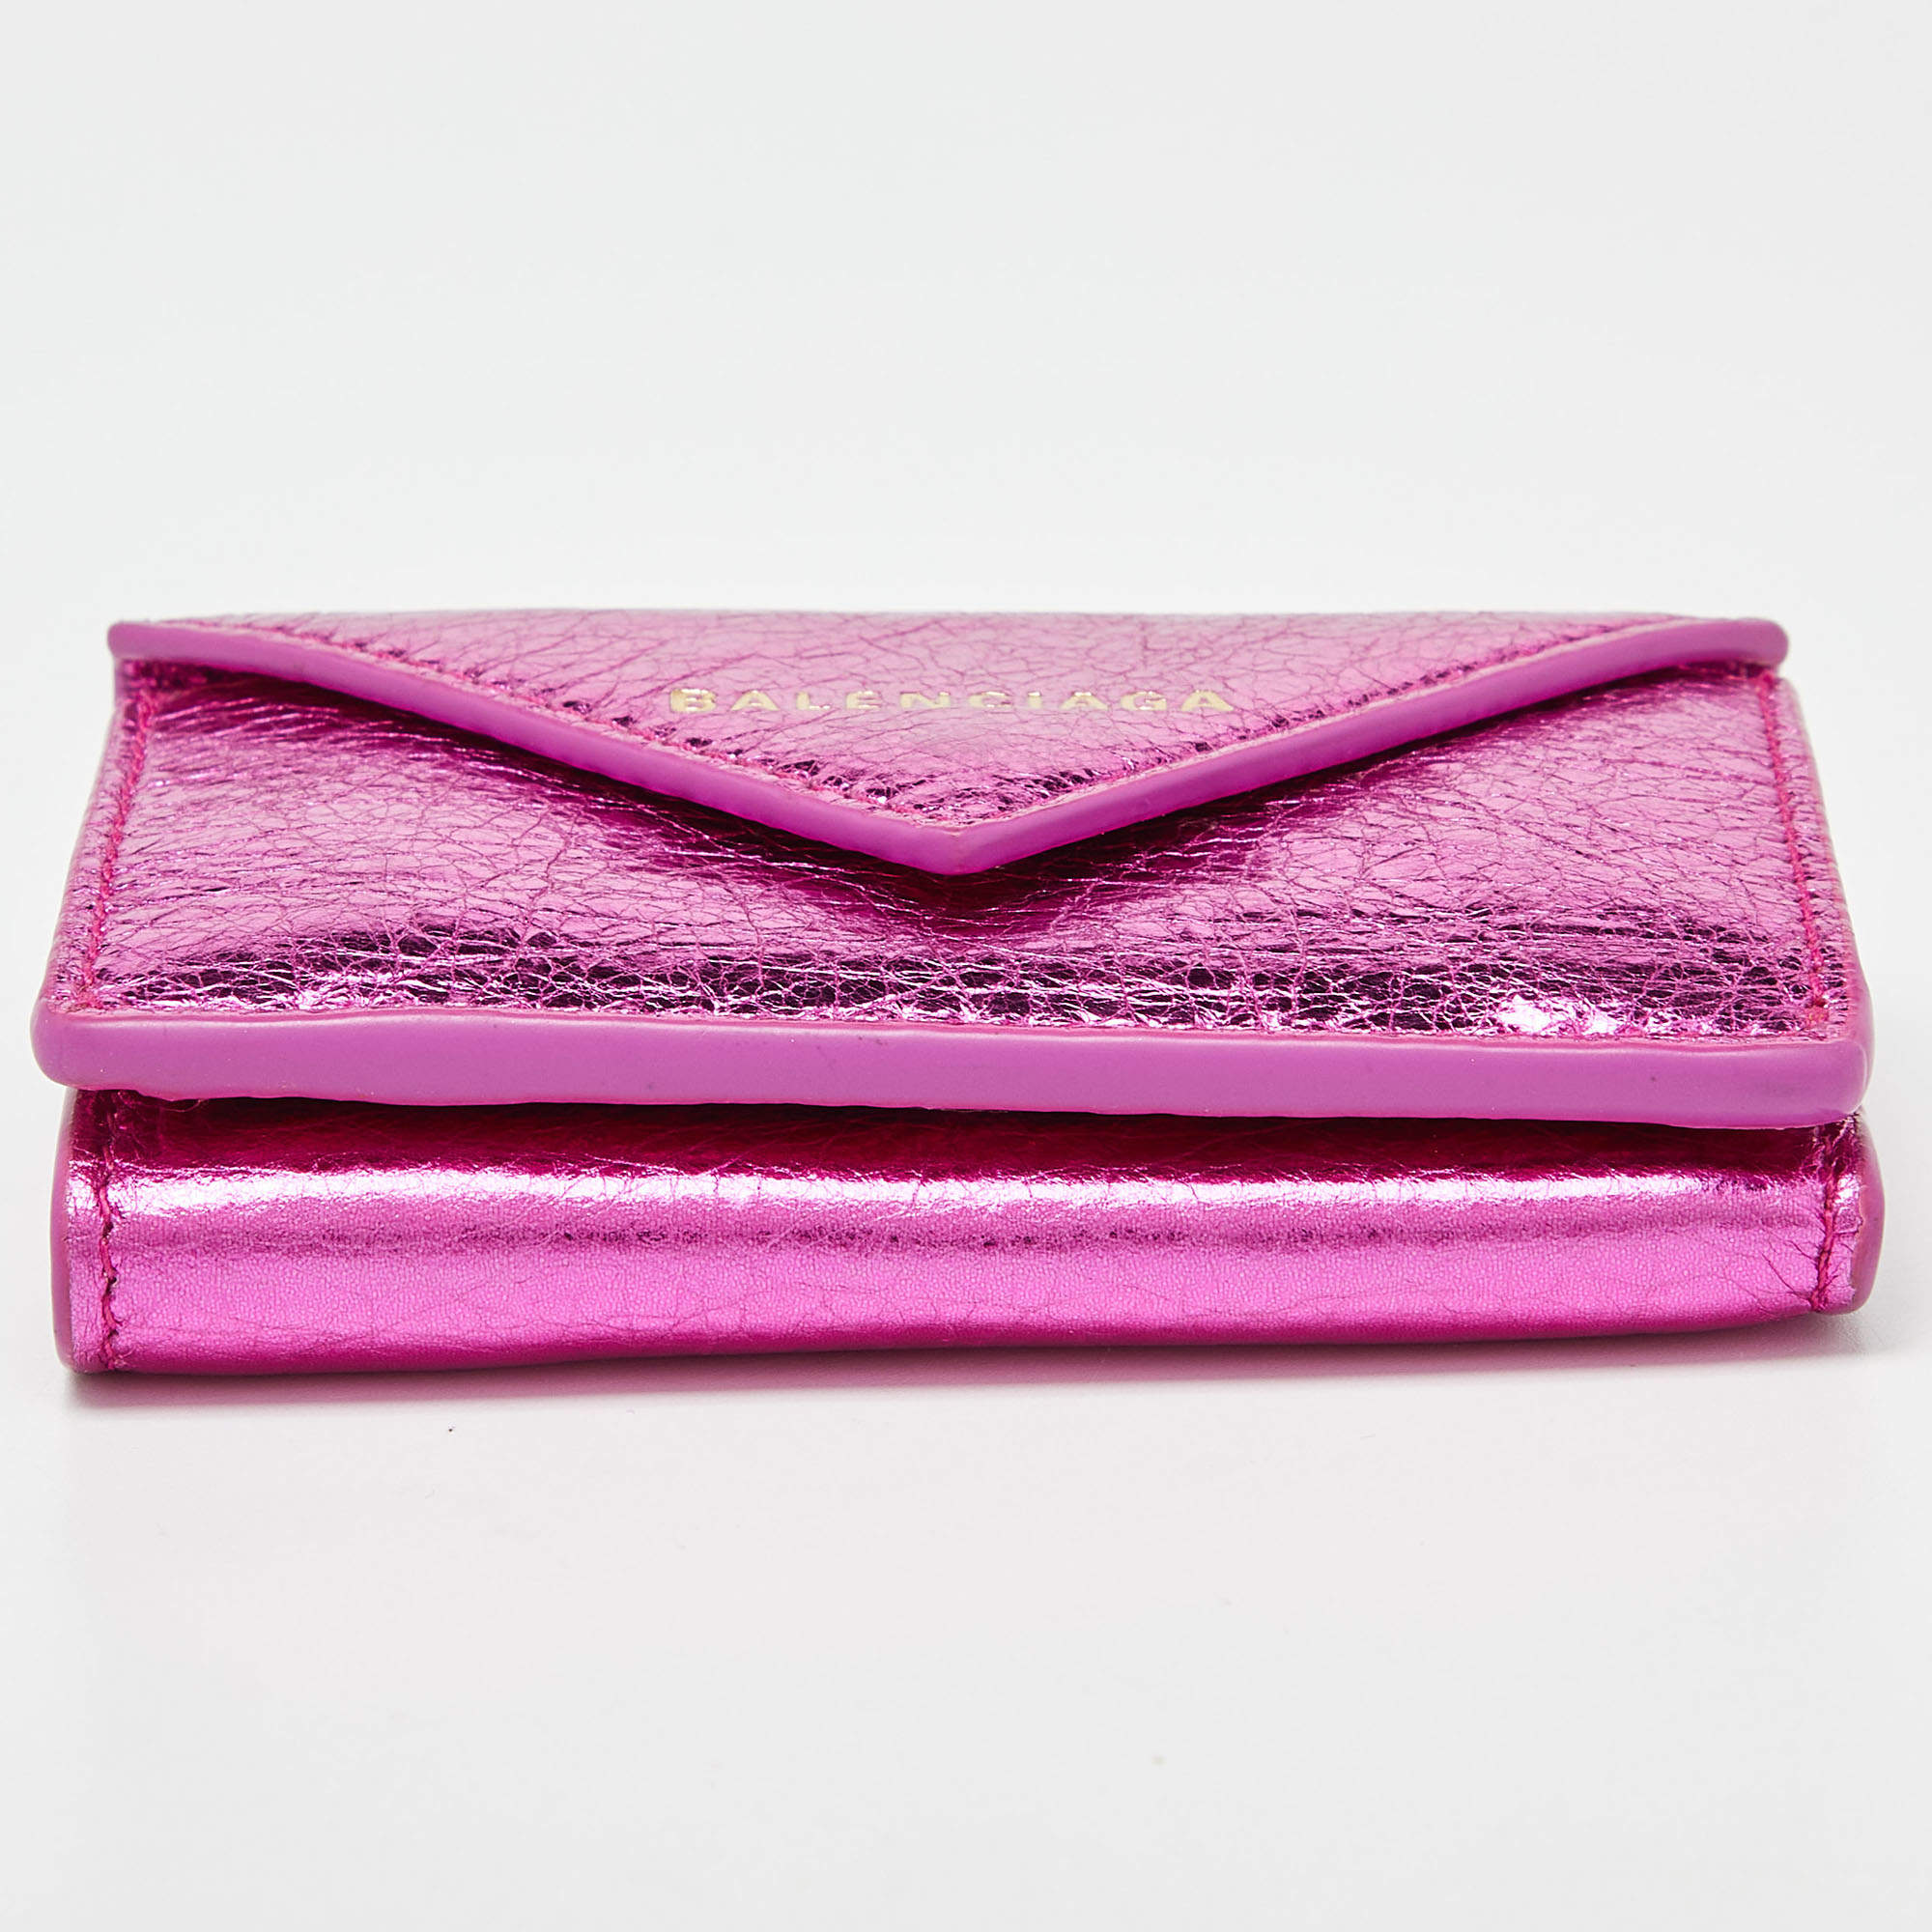 Pink Balenciaga Mini Papier Wallet – Designer Revival